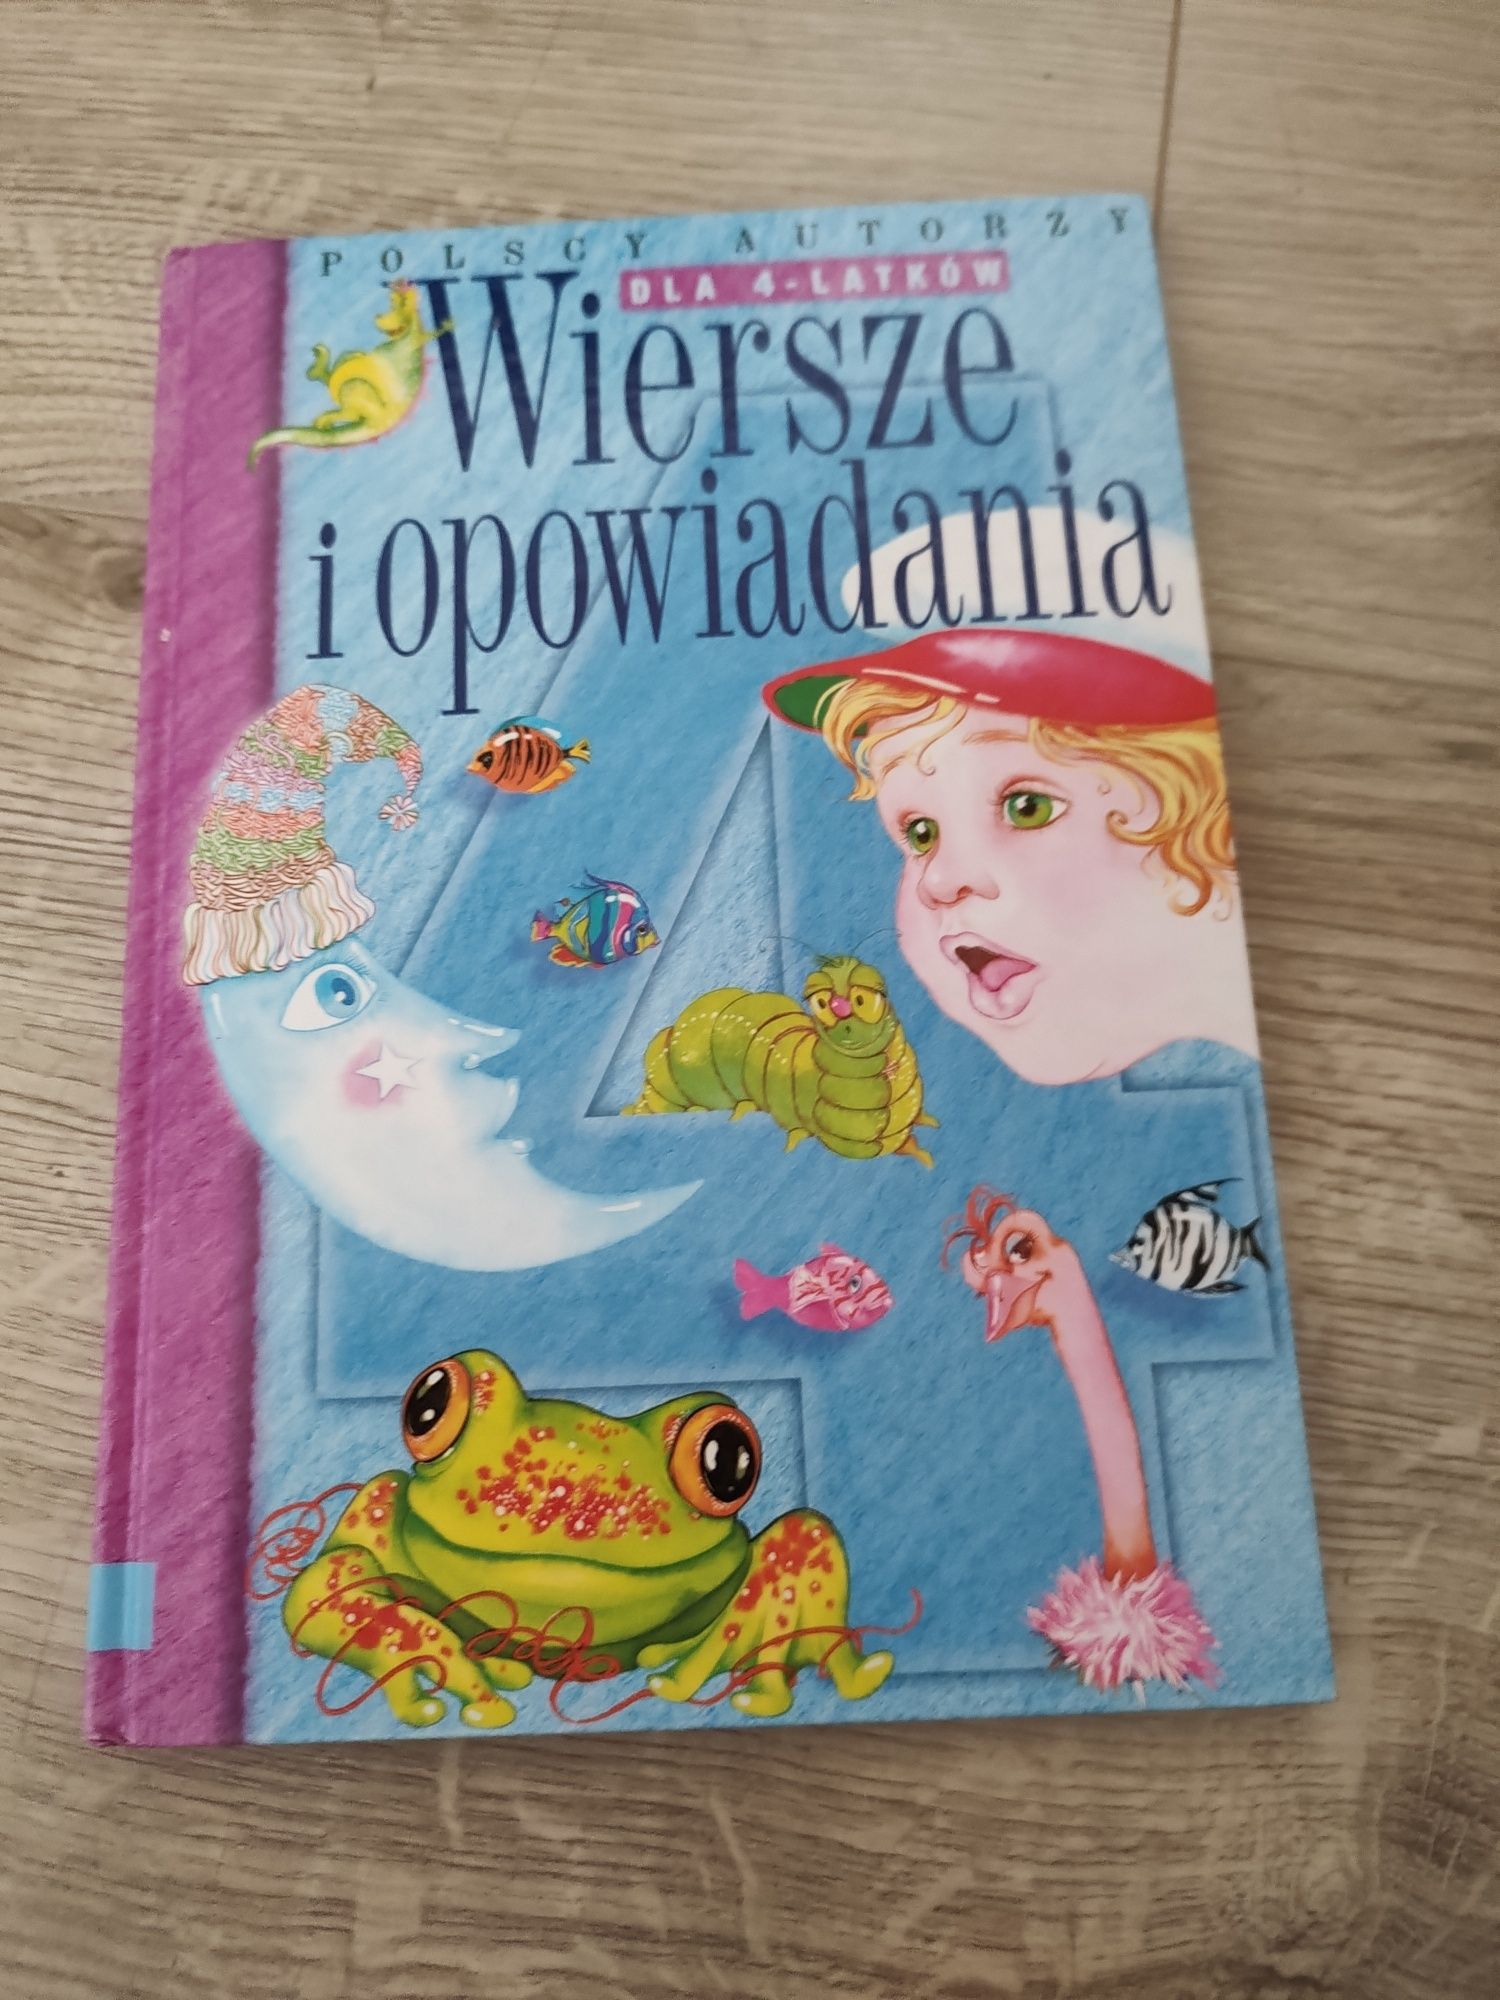 Wiersze i opowiadania dla 4-latków polscy autorzy